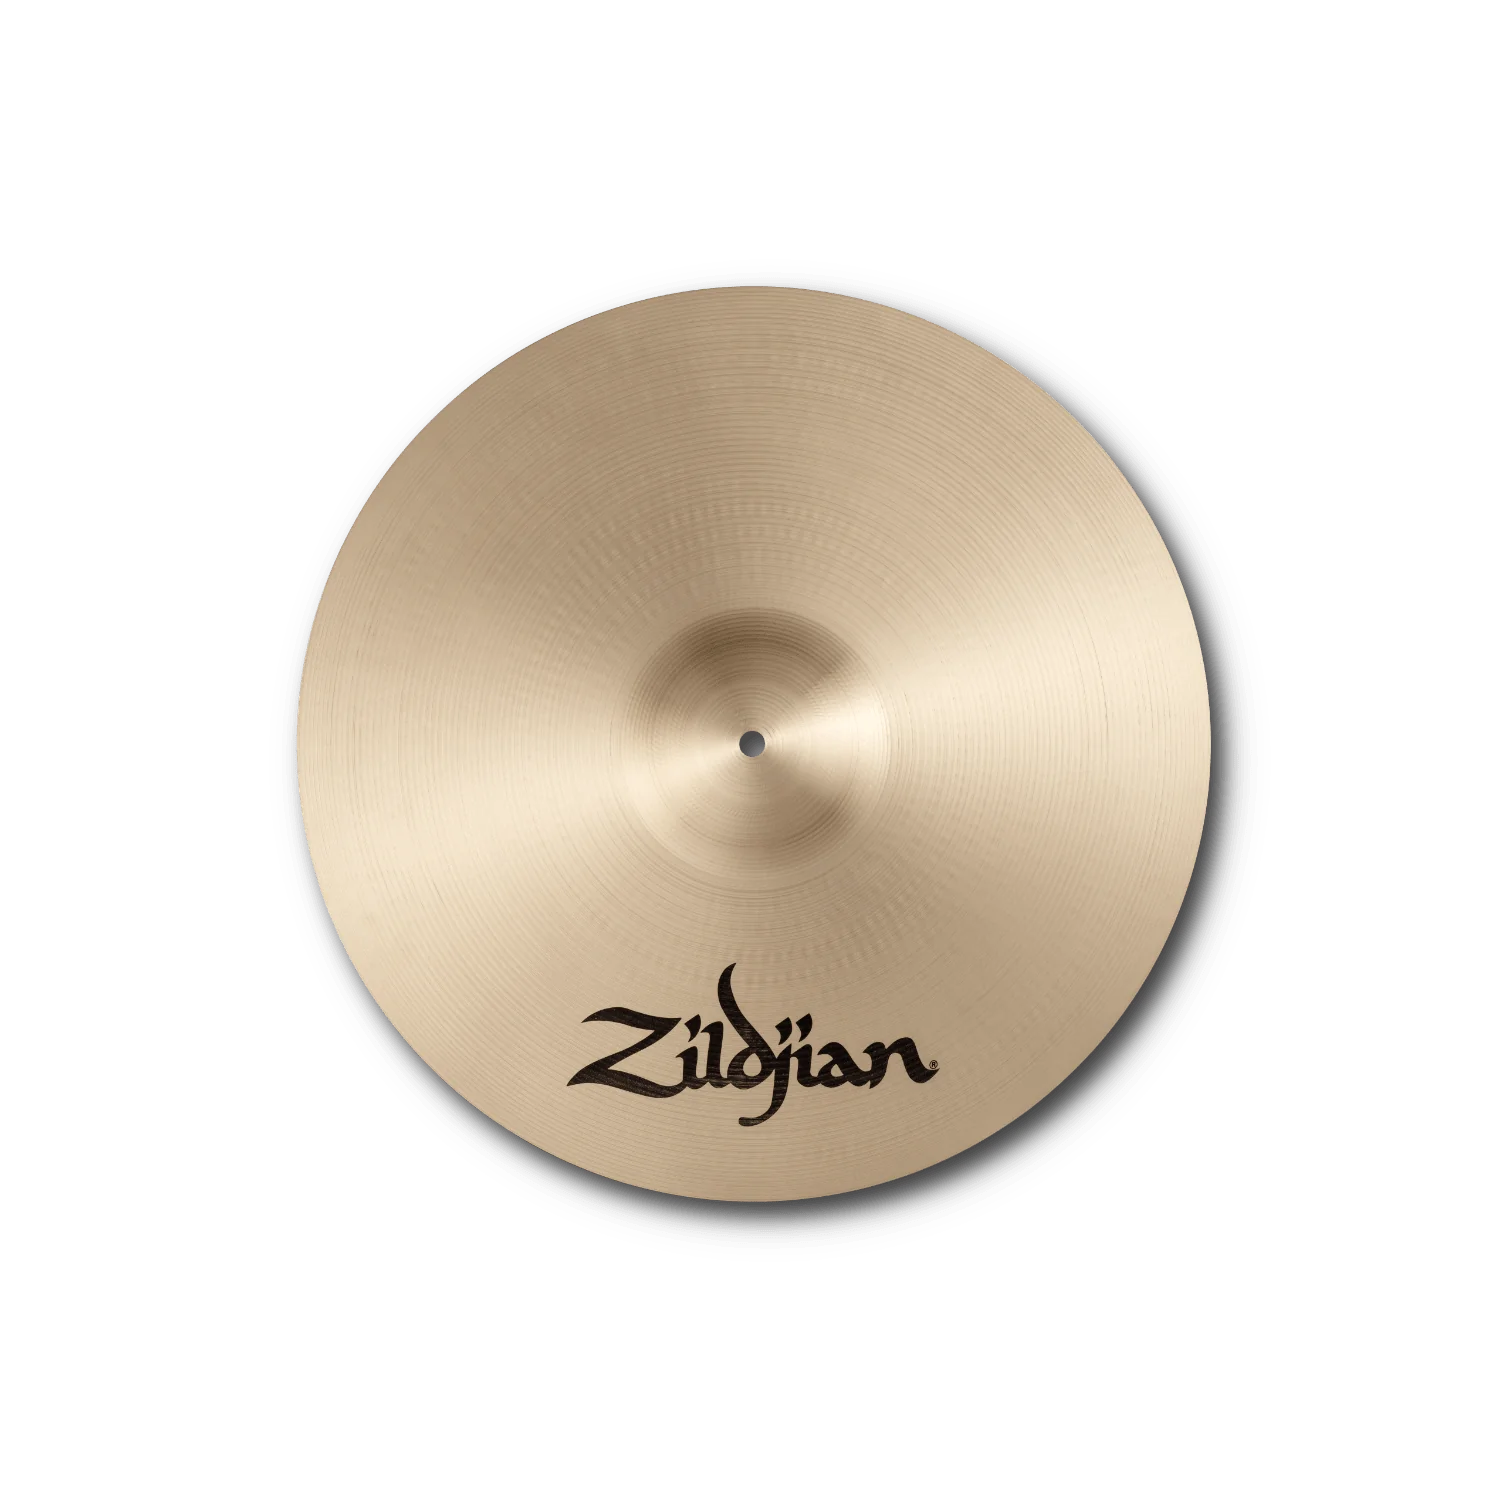 Cymbal Zildjian A Family - A Zildjian Medium Thin Crashes - A0232 - Việt Music